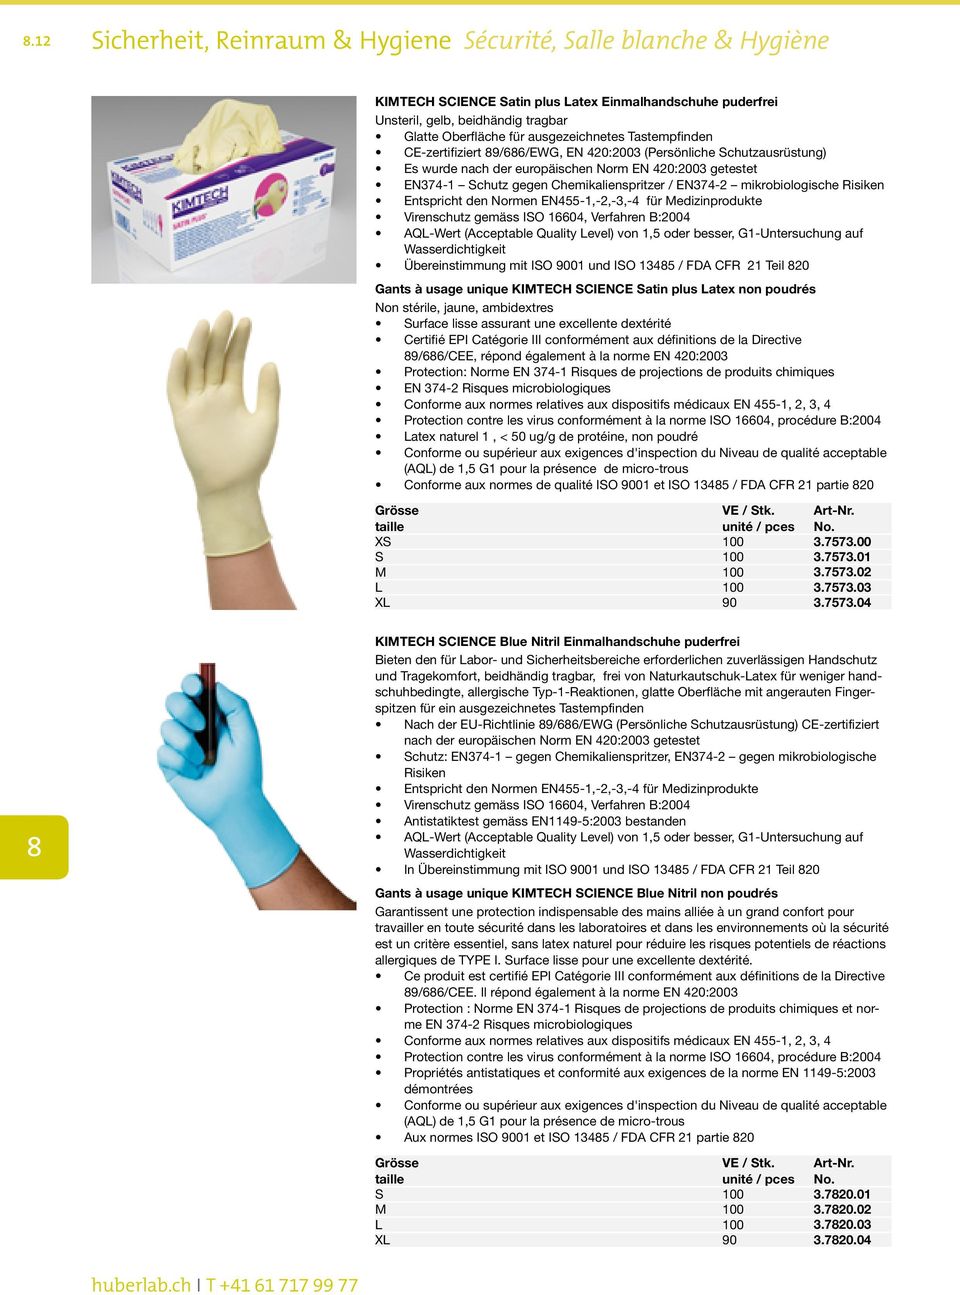 EN374-2 mikrobiologische Risiken Entspricht den Normen EN455-1,-2,-3,-4 für Medizinprodukte Virenschutz gemäss ISO 16604, Verfahren B:2004 AQL-Wert (Acceptable Quality Level) von 1,5 oder besser,